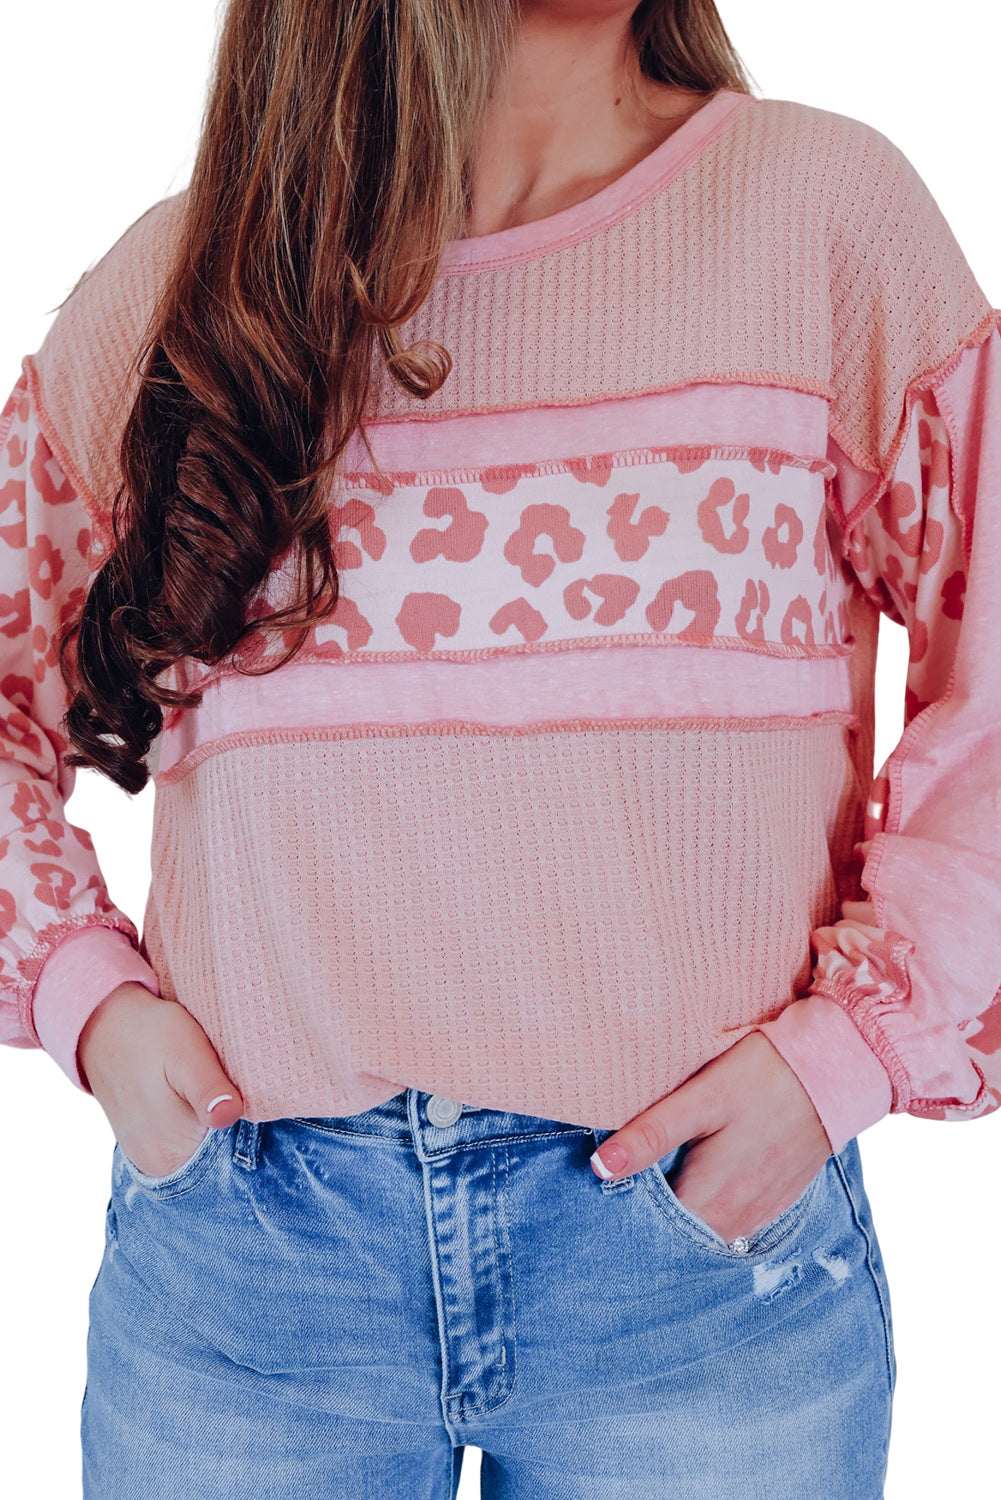 Haut en tricot gaufré à coutures apparentes et patchwork léopard rose